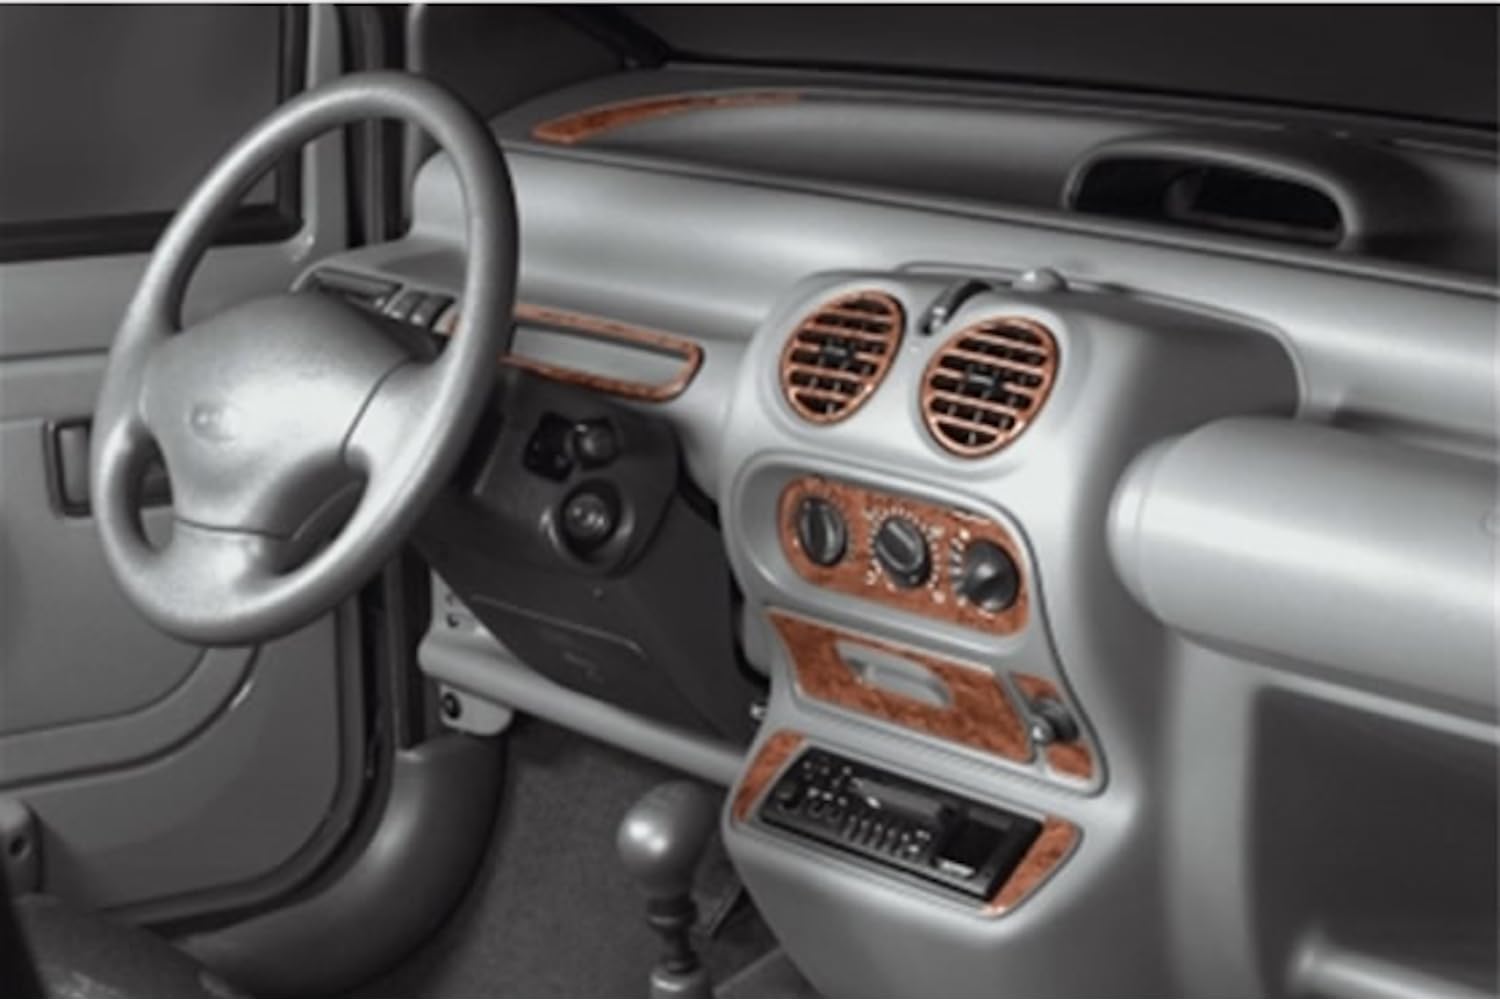 AUTOKLEIDUNG® Cockpit Dekor kompatibel mit Renault Twingo Baujahr 09/1998-07/2004 12 Teile | 3D Titan Optik von Autokleidung